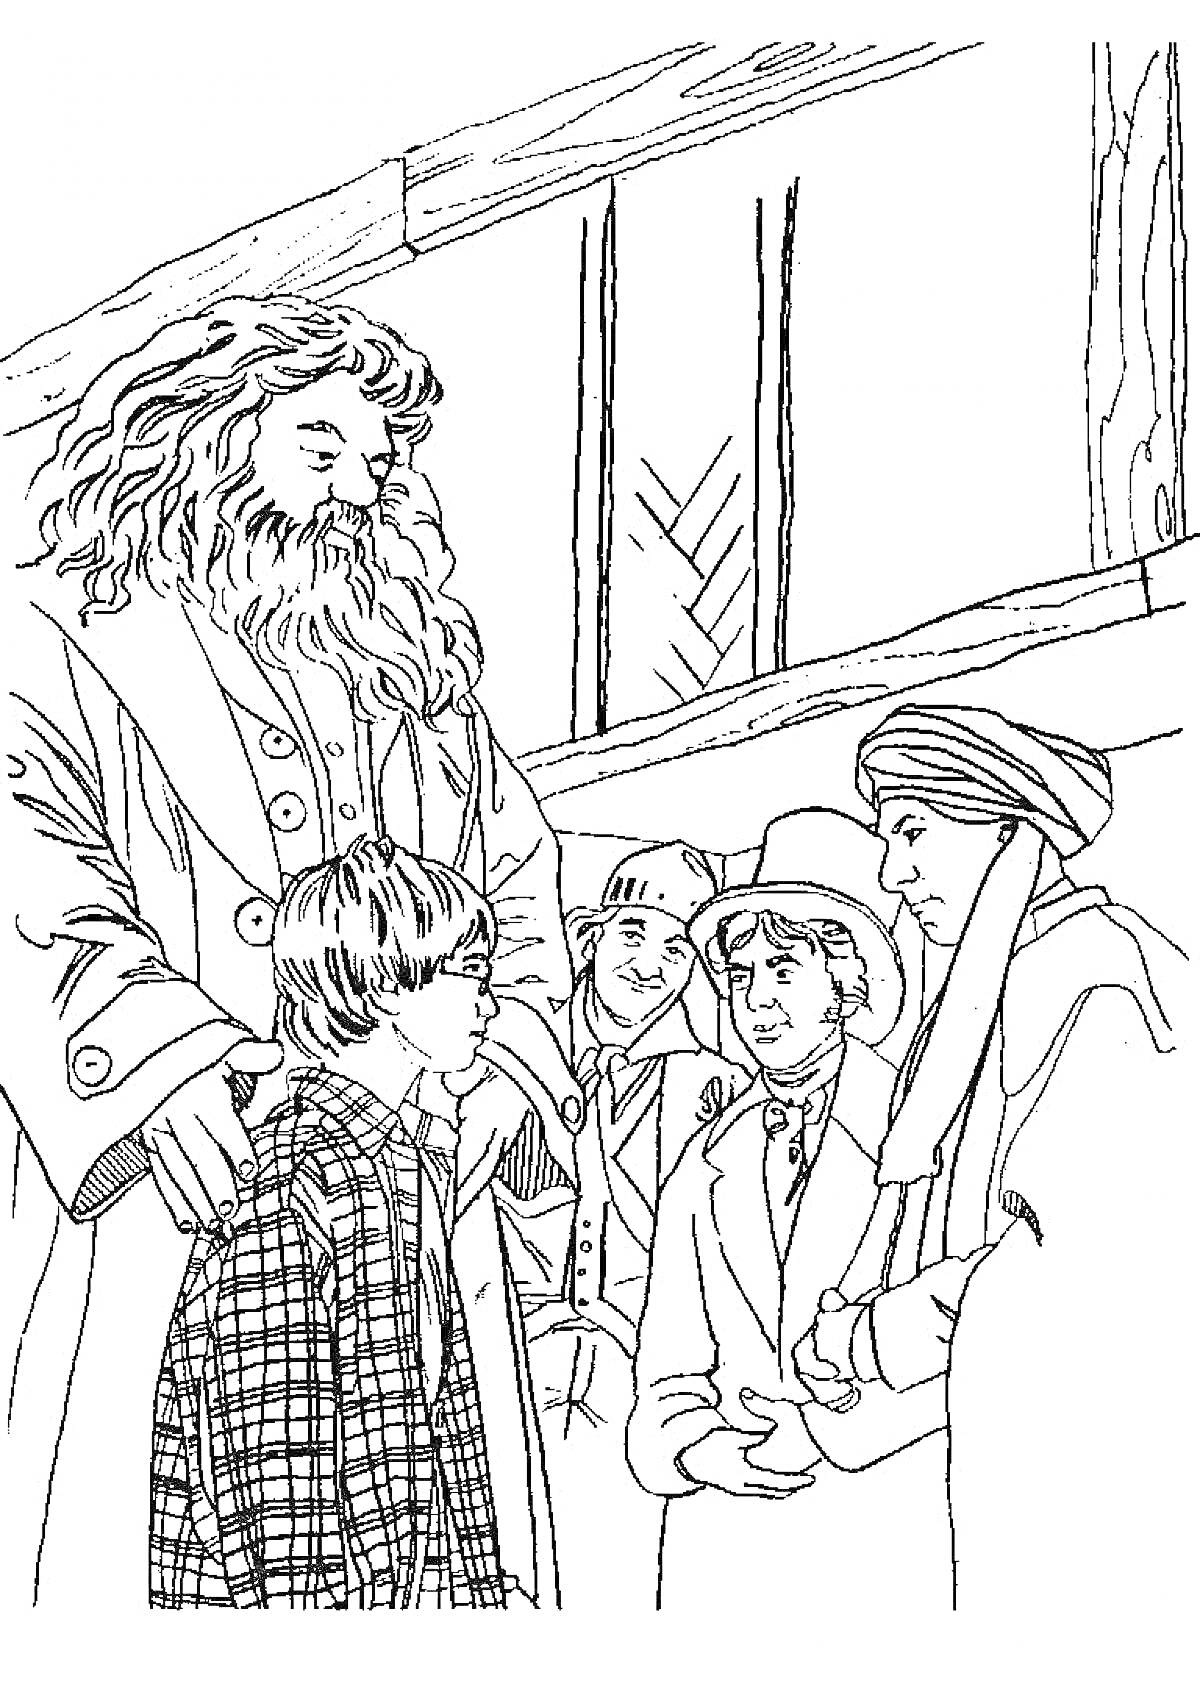 Гарри Поттер с Хагридом и преподавателями в Хогвартсе